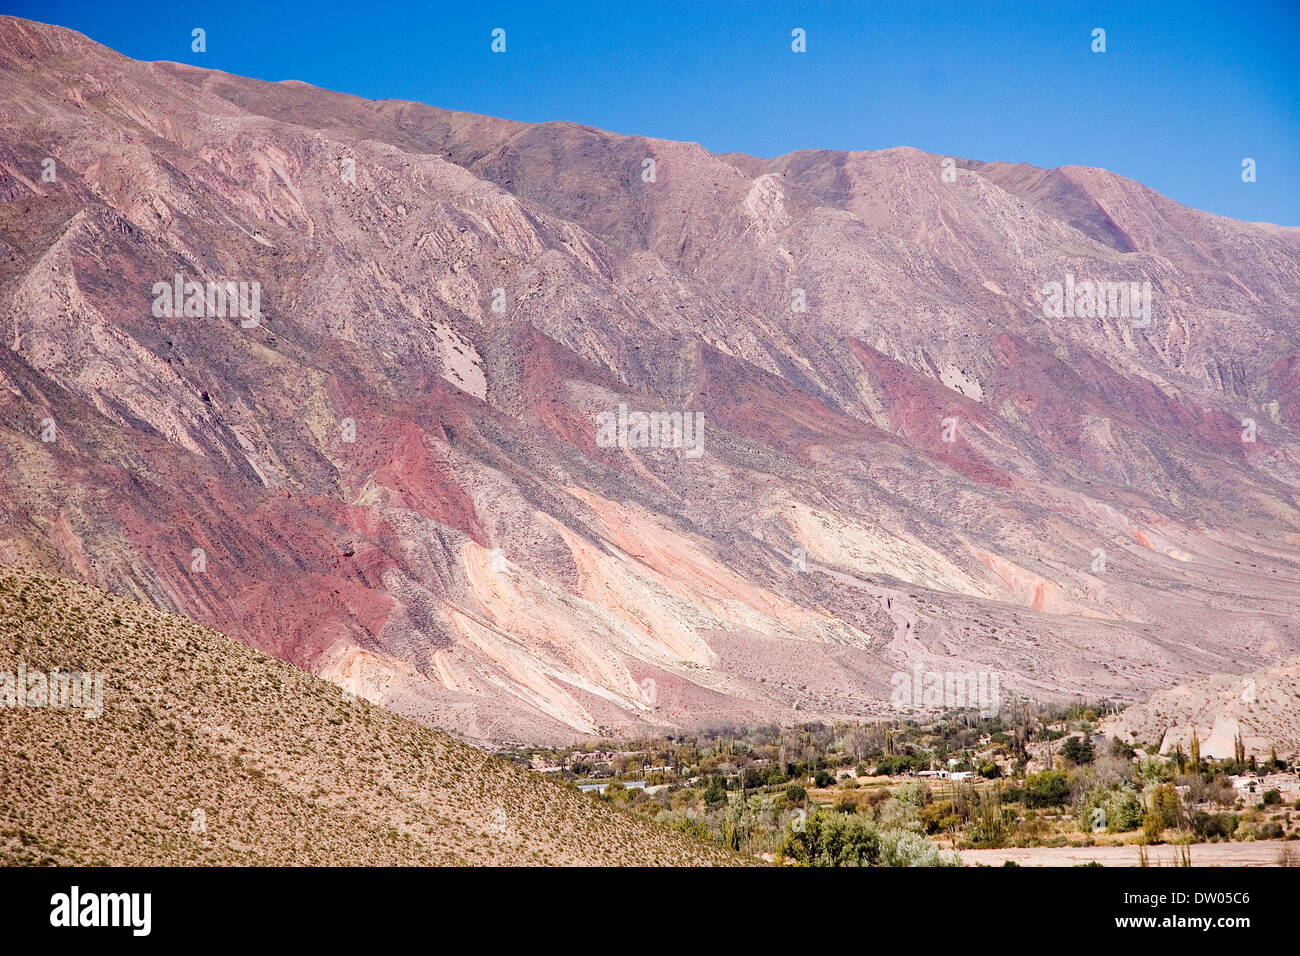 Cerro de los siete colores, Pumamarca, Quebrada de Humahuaca, Argentine Stock Photo